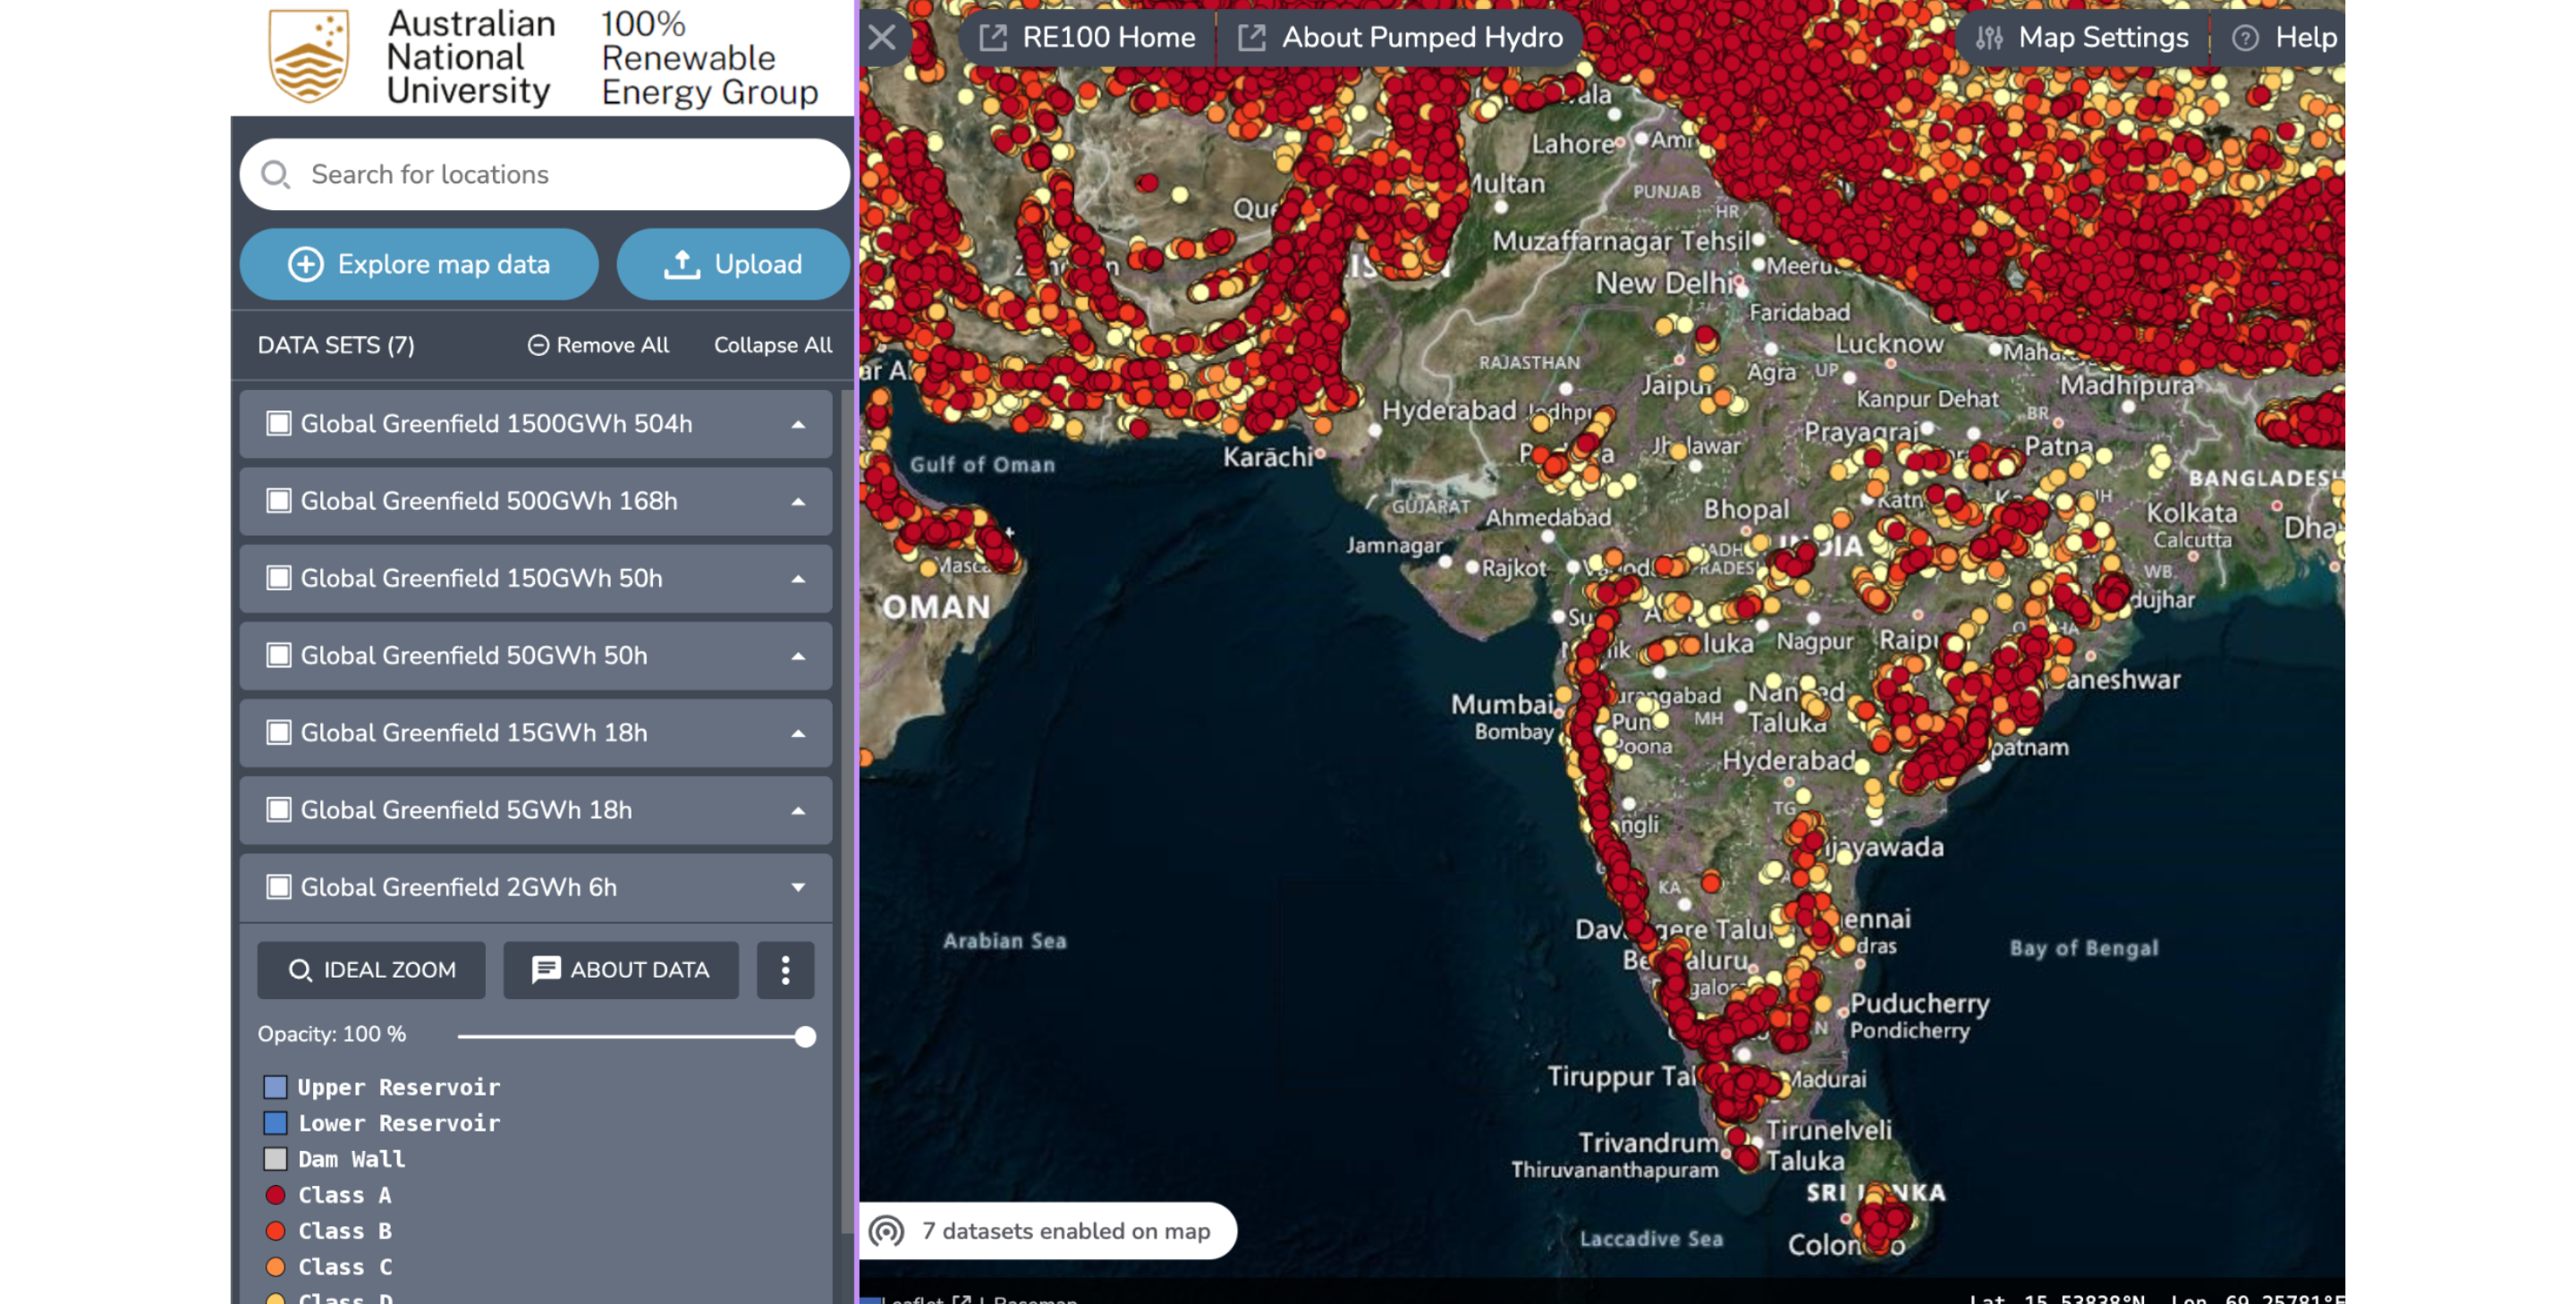 حلقه بسته، ظرفیت منابع آبی پمپاژ شده در هند به ازای اطلس سبز فیلد جهانی GIS دانشگاه ملی استرالیا